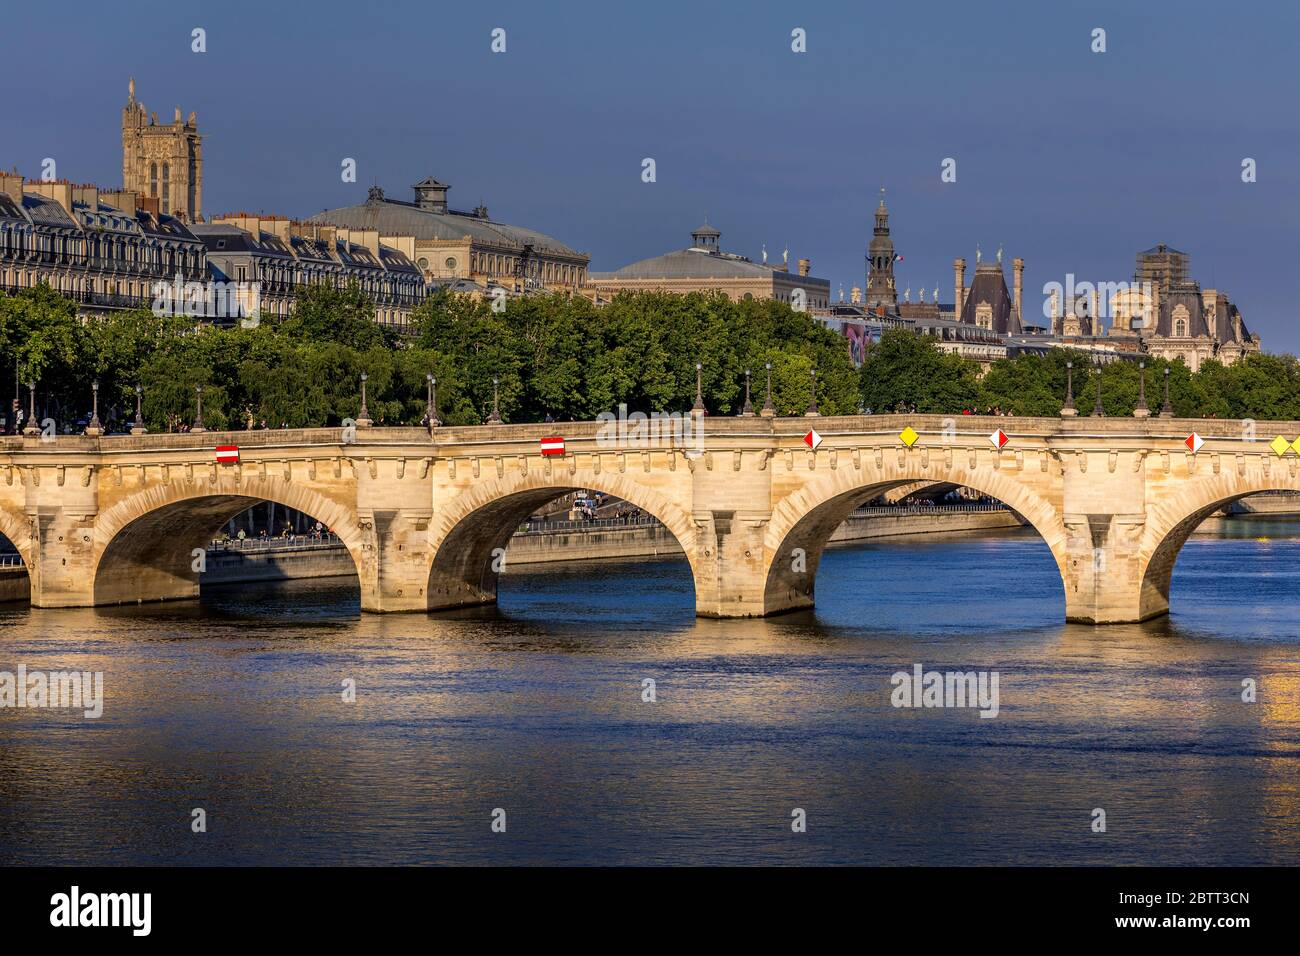 Parigi, Francia - 14 maggio 2020: Vista del ponte Pont neuf, il ponte più antico di Parigi e gli edifici Haussmann sullo sfondo Foto Stock